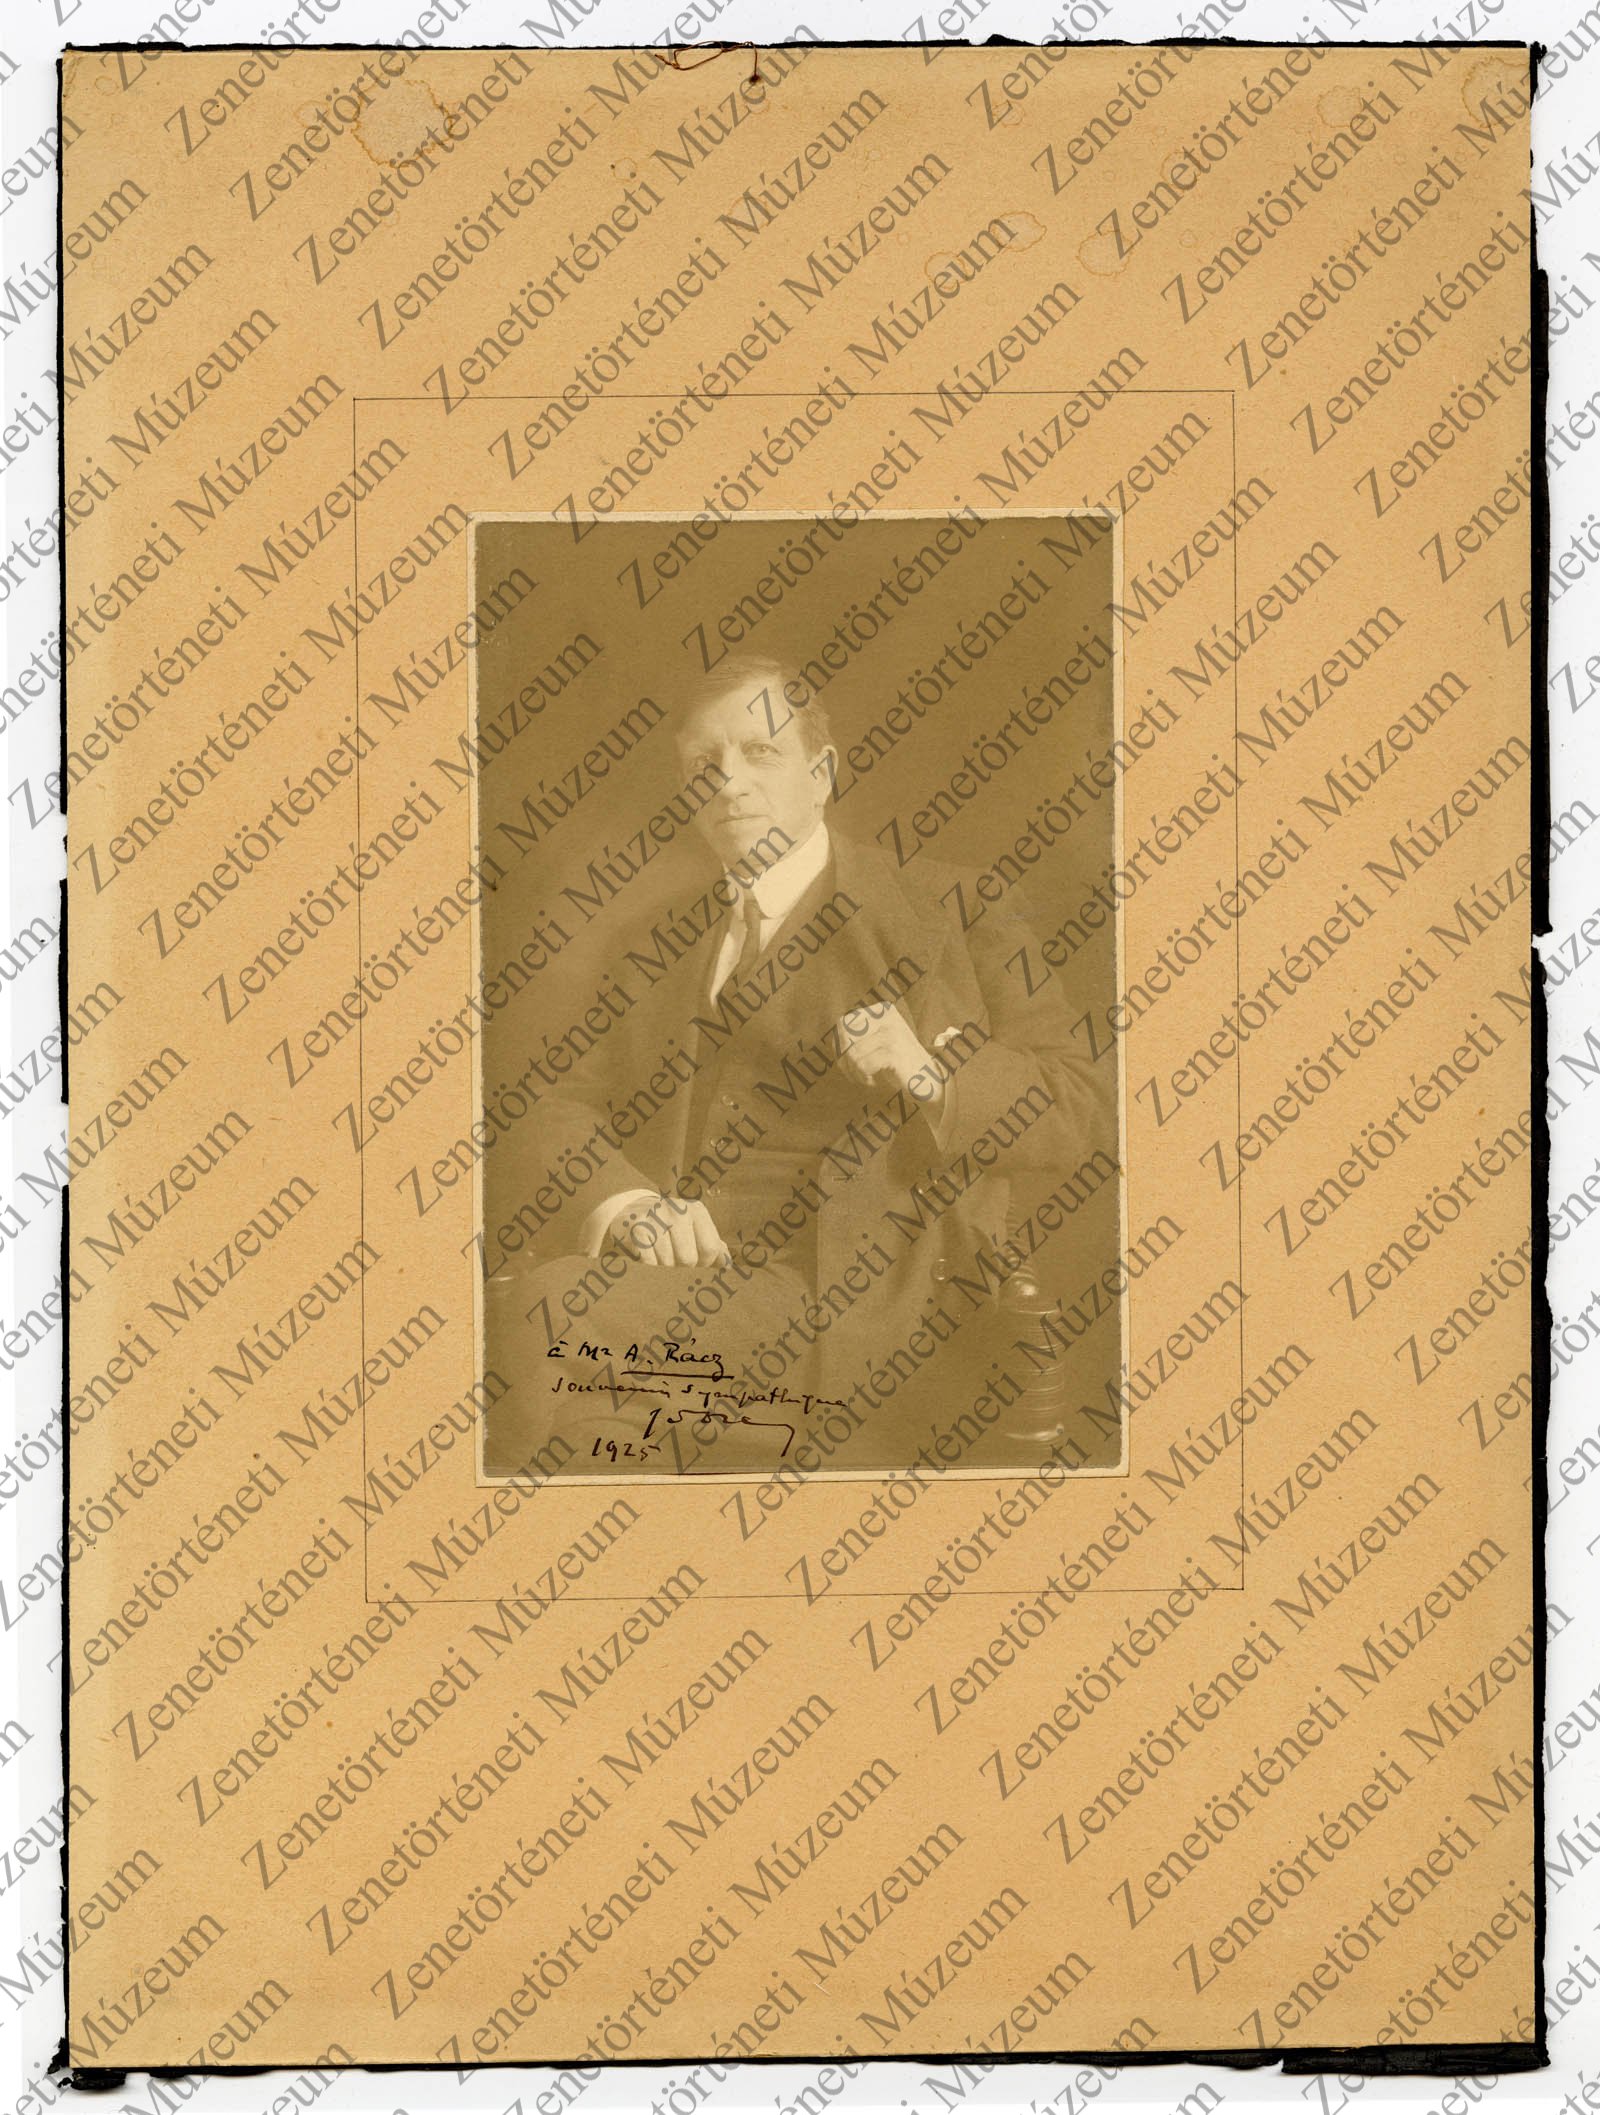 Gustave Doret zeneszerző Rácz Aladárnak dedikált fényképe (Zenetörténeti Múzeum CC BY-NC-SA)